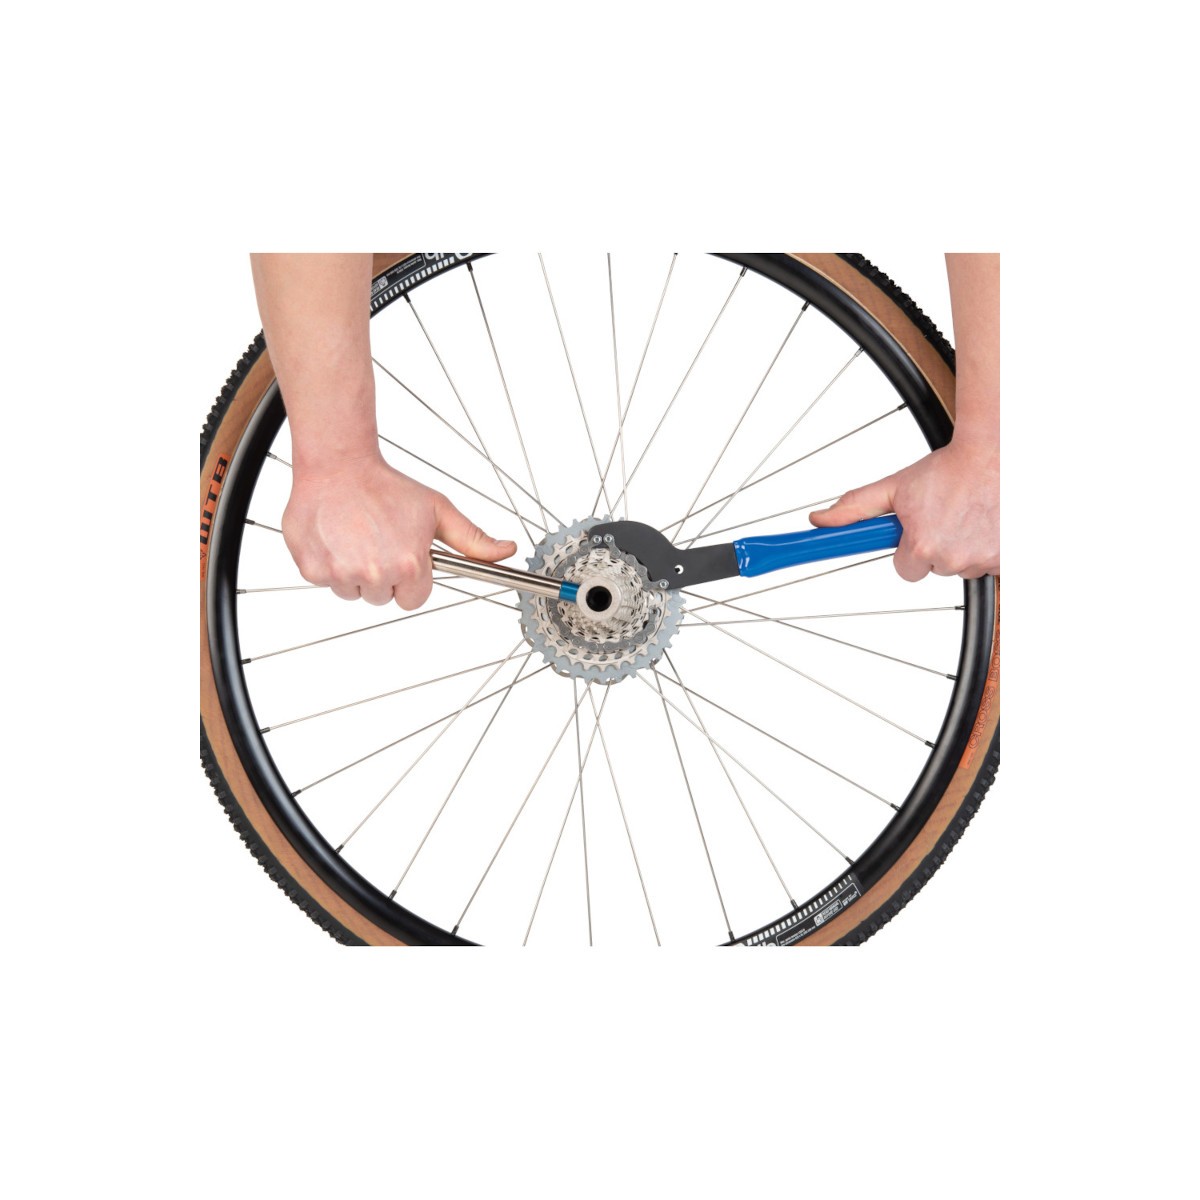 Kit d'outils de fouet de chaîne Kit d'outils de retrait de cassette de vélo  Contient un extracteur de manivelle - Clé de roue libre Fouet de chaîne  Outil de retrait de cassette